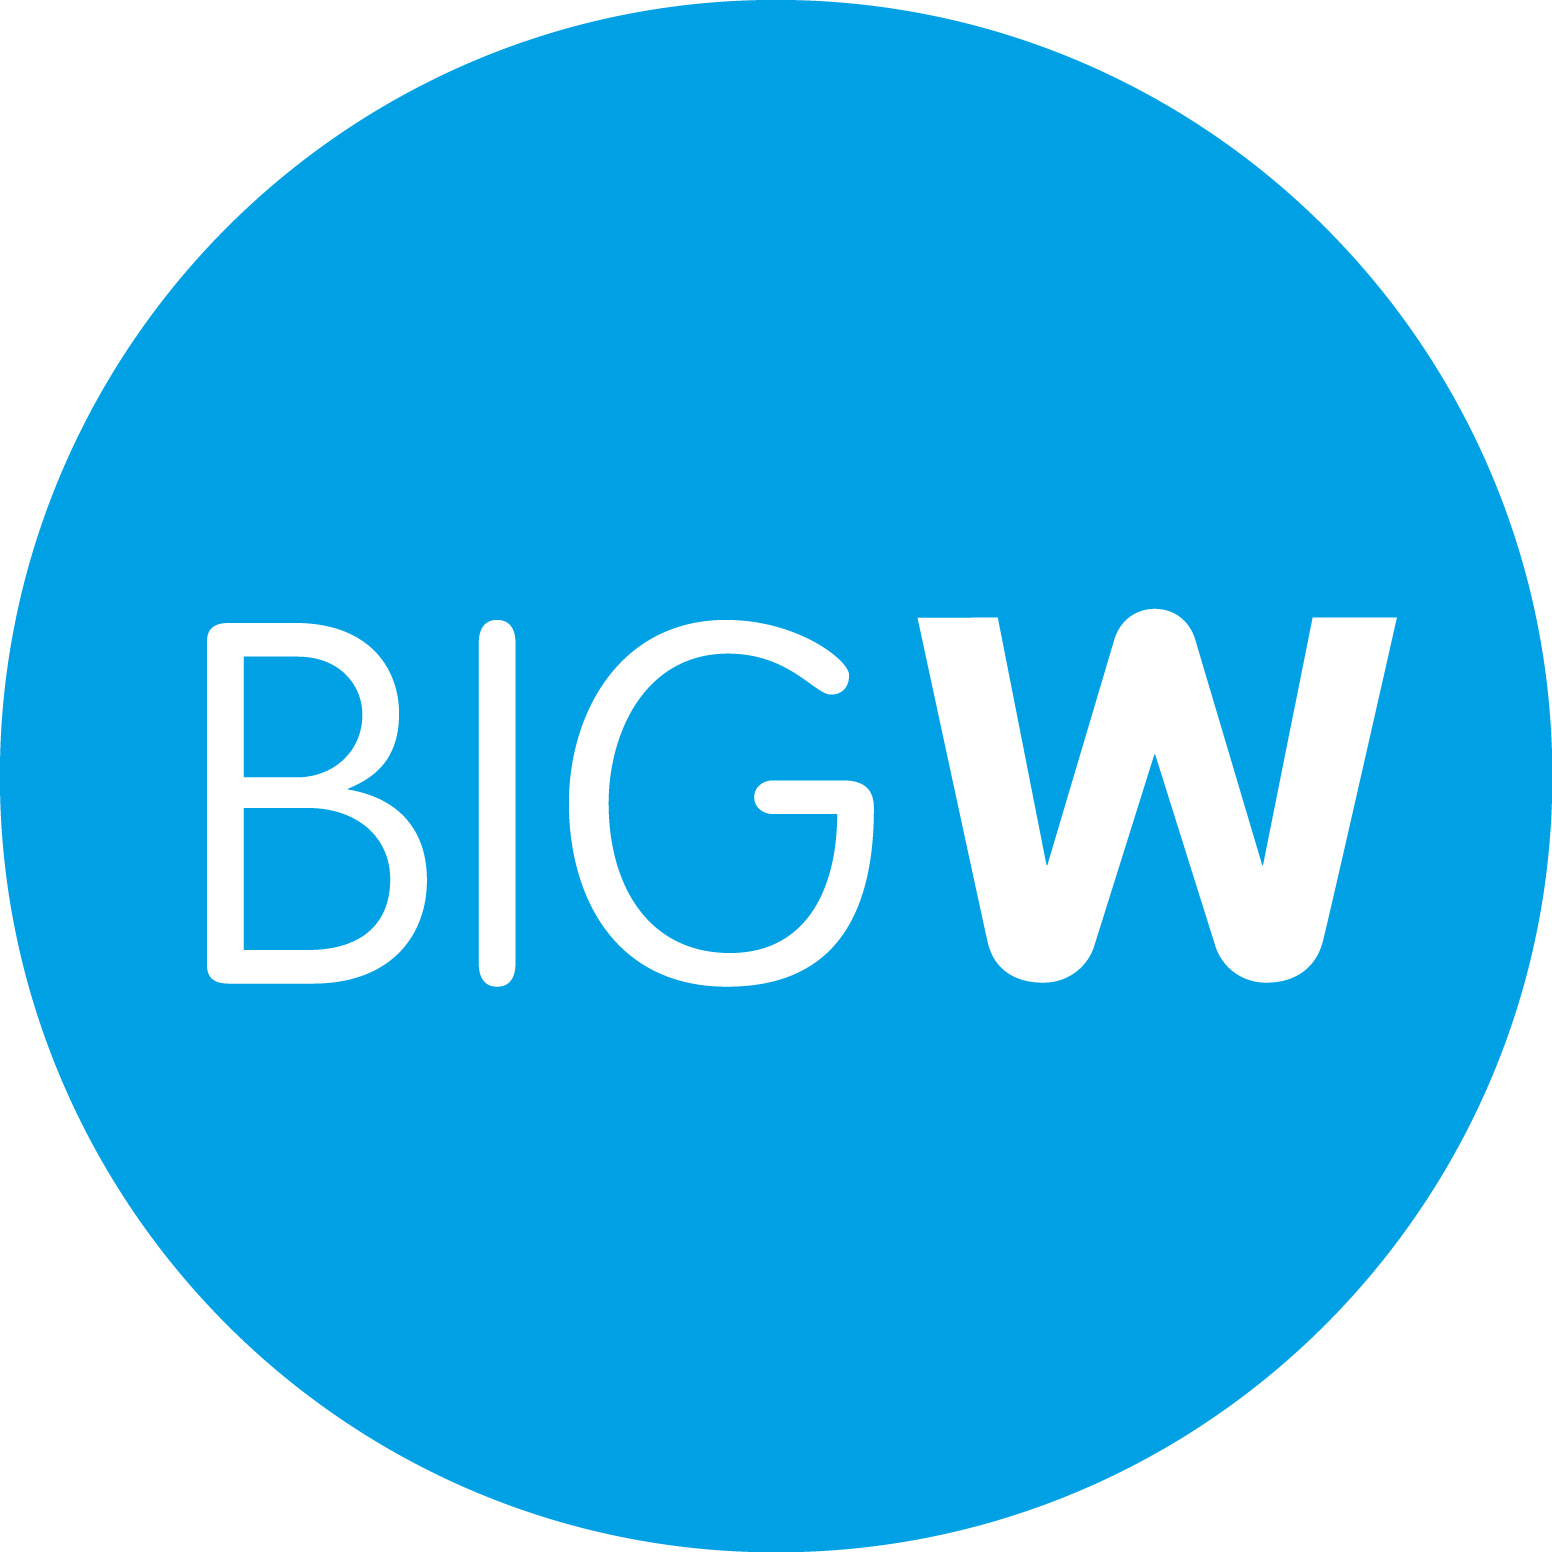 Big W Logo - Image - Big W logo (2015).png | Logopedia | FANDOM powered by Wikia